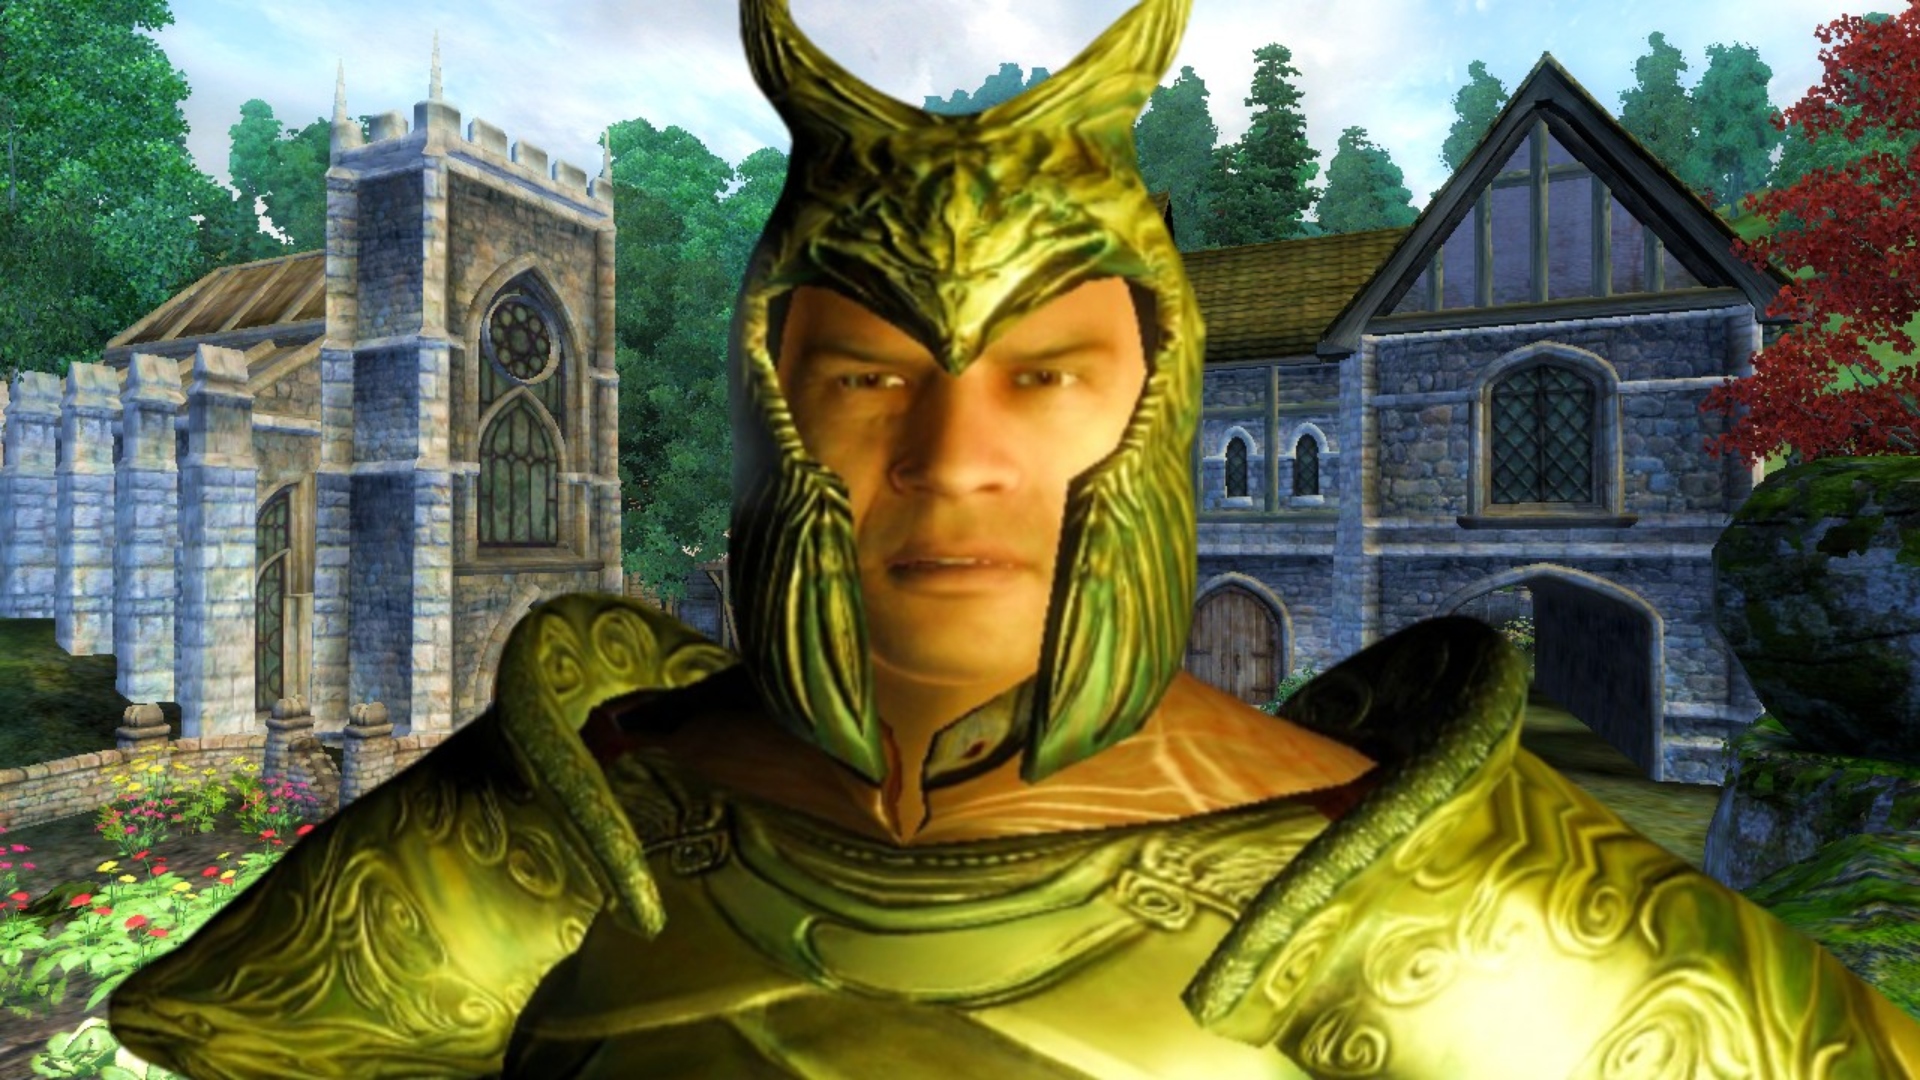 Elder Scrolls Oblivion remake gets huge new gameplay reveal